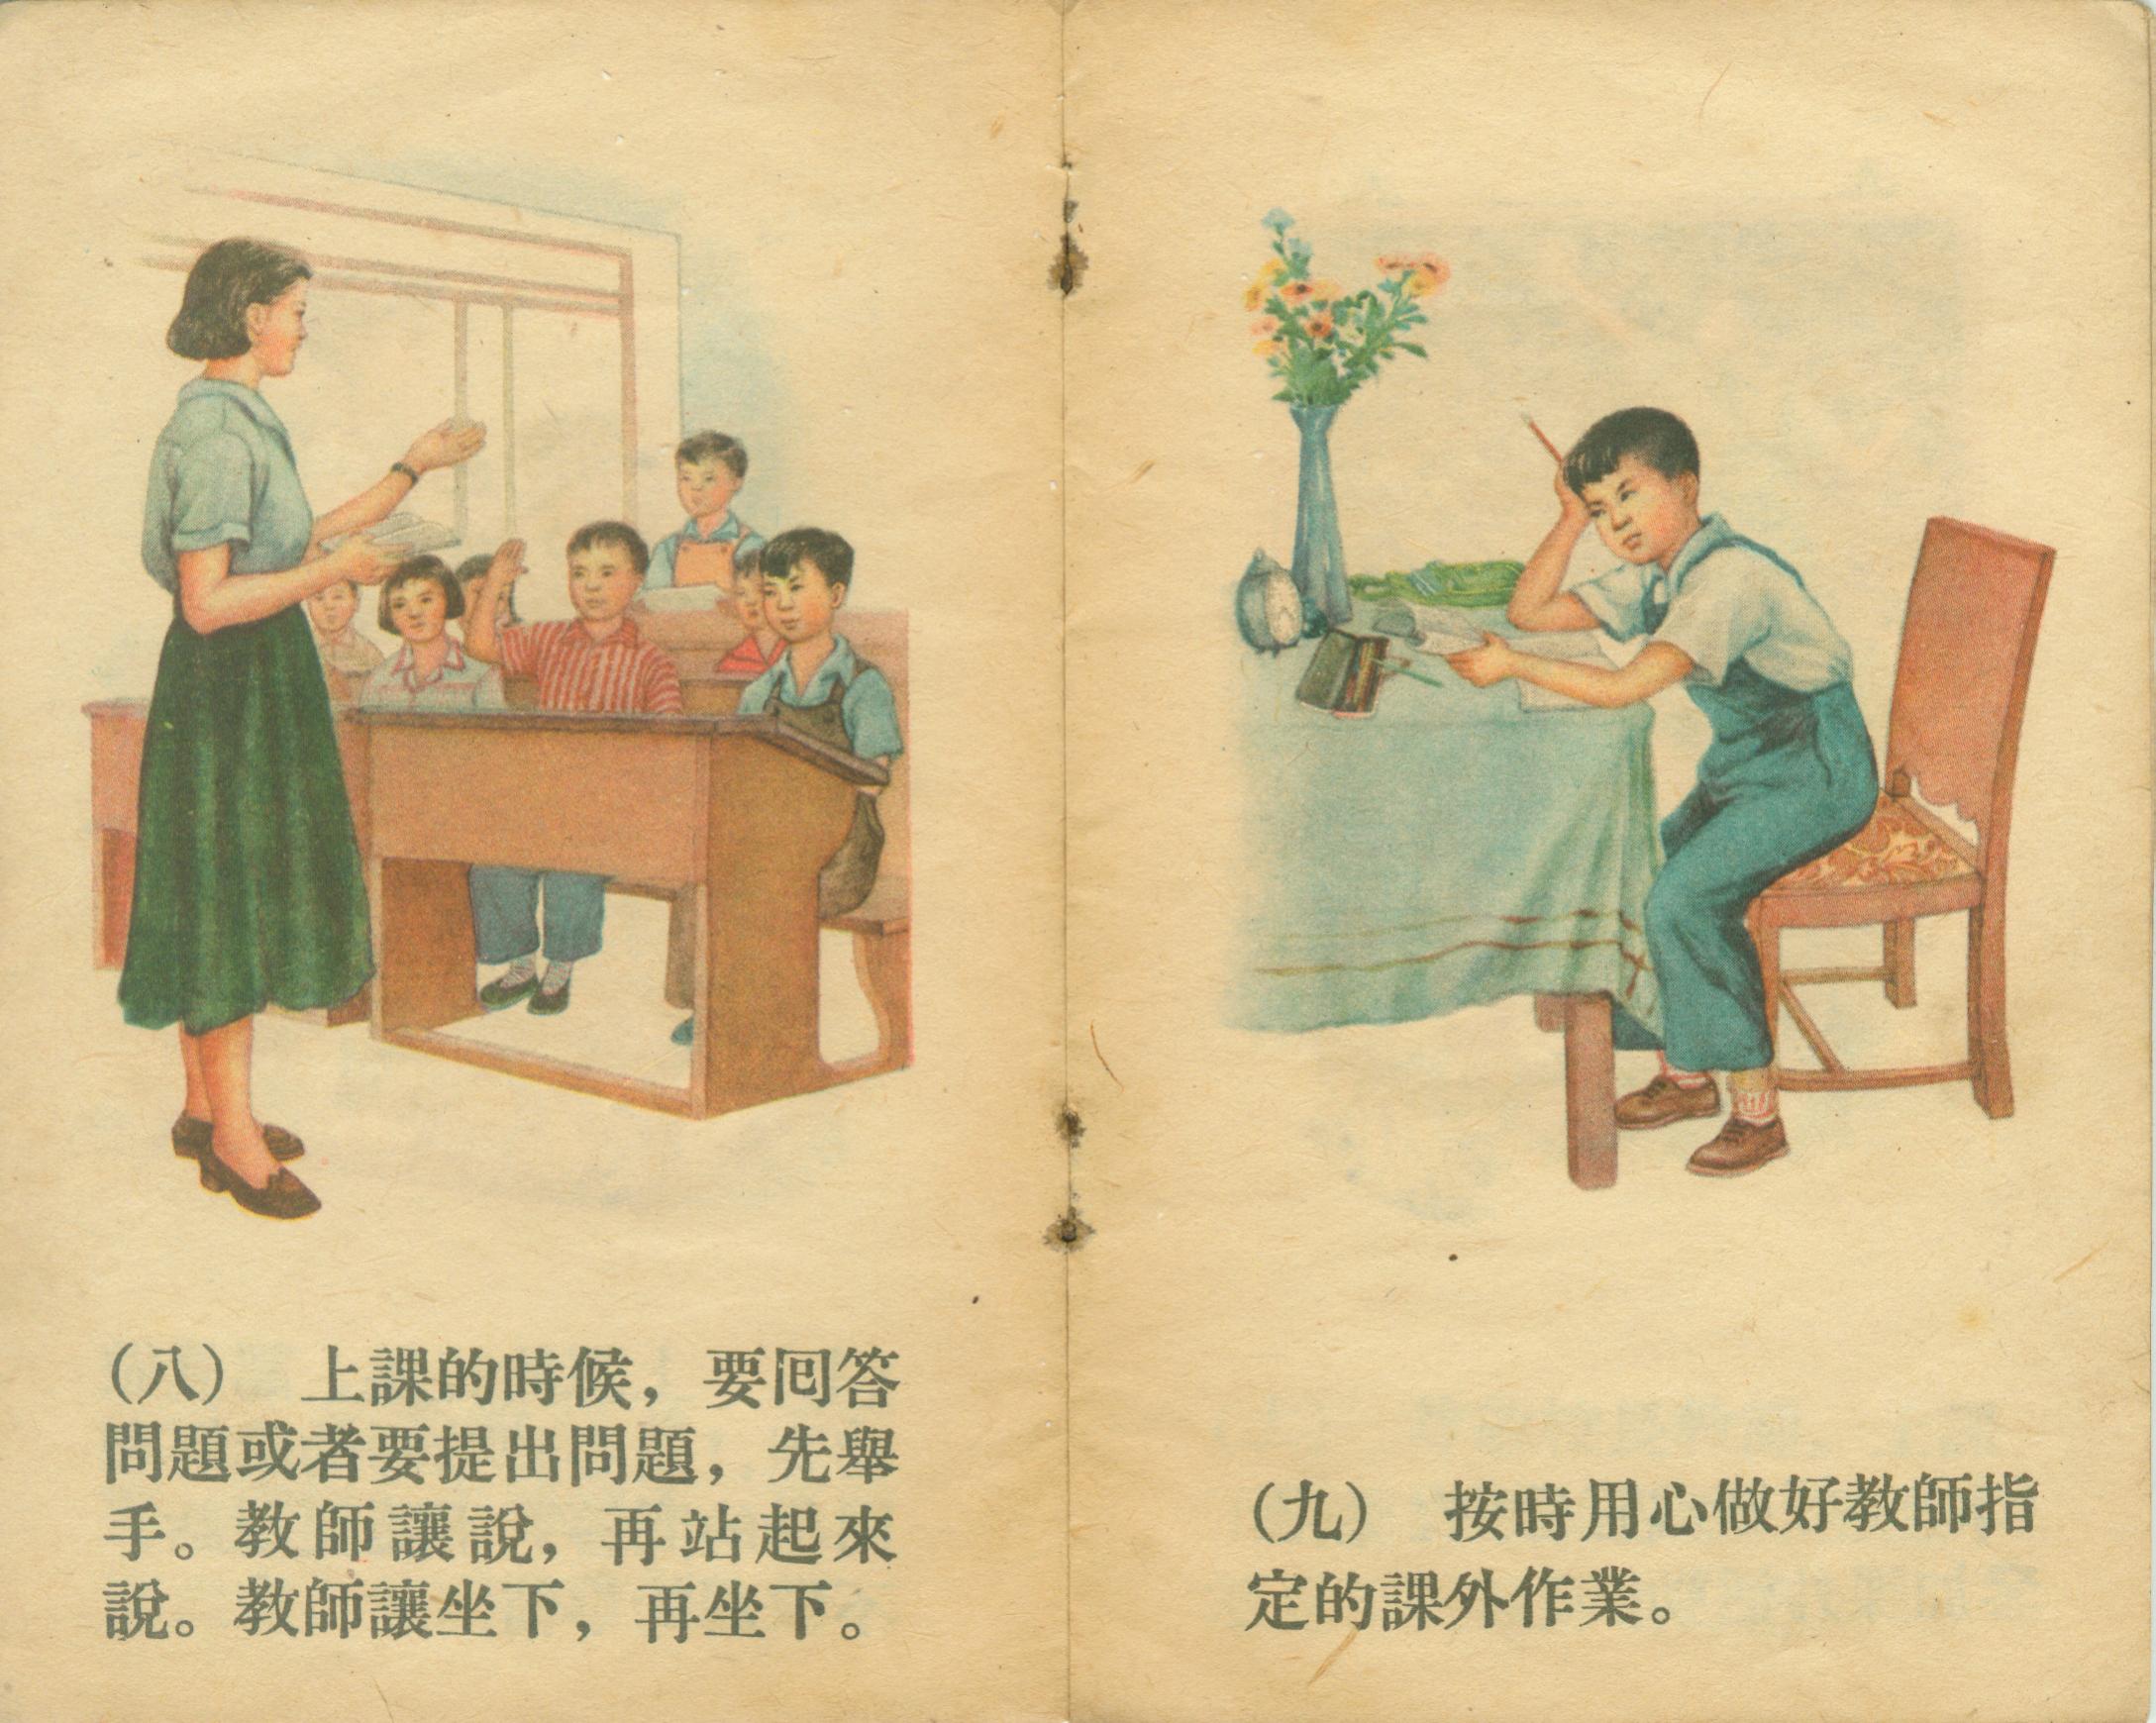 1955年小学生守则图解，来自武汉市洪山区永安小学